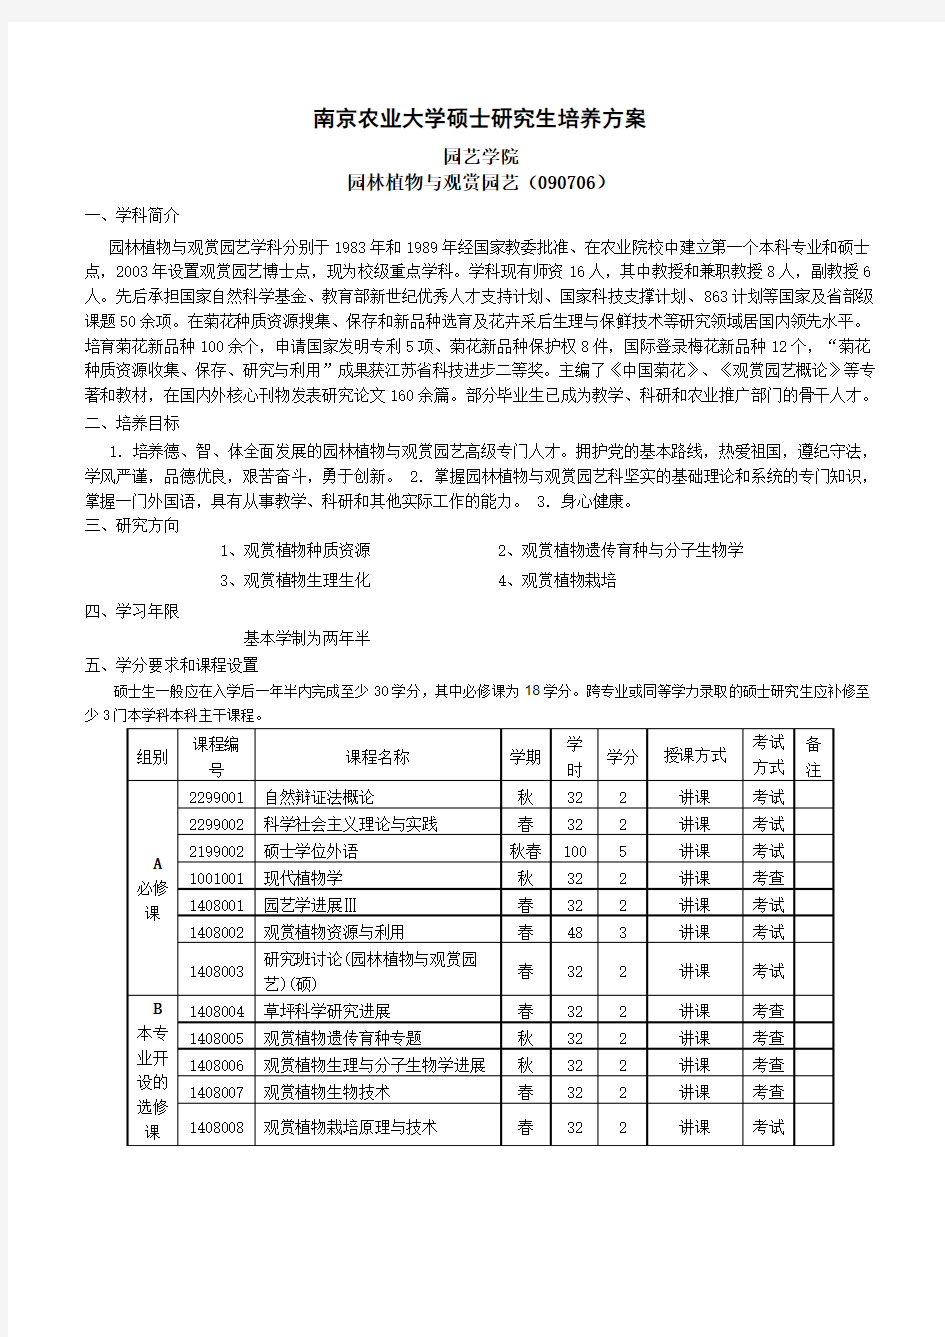 南京农业大学研究生培养方案-观赏园艺